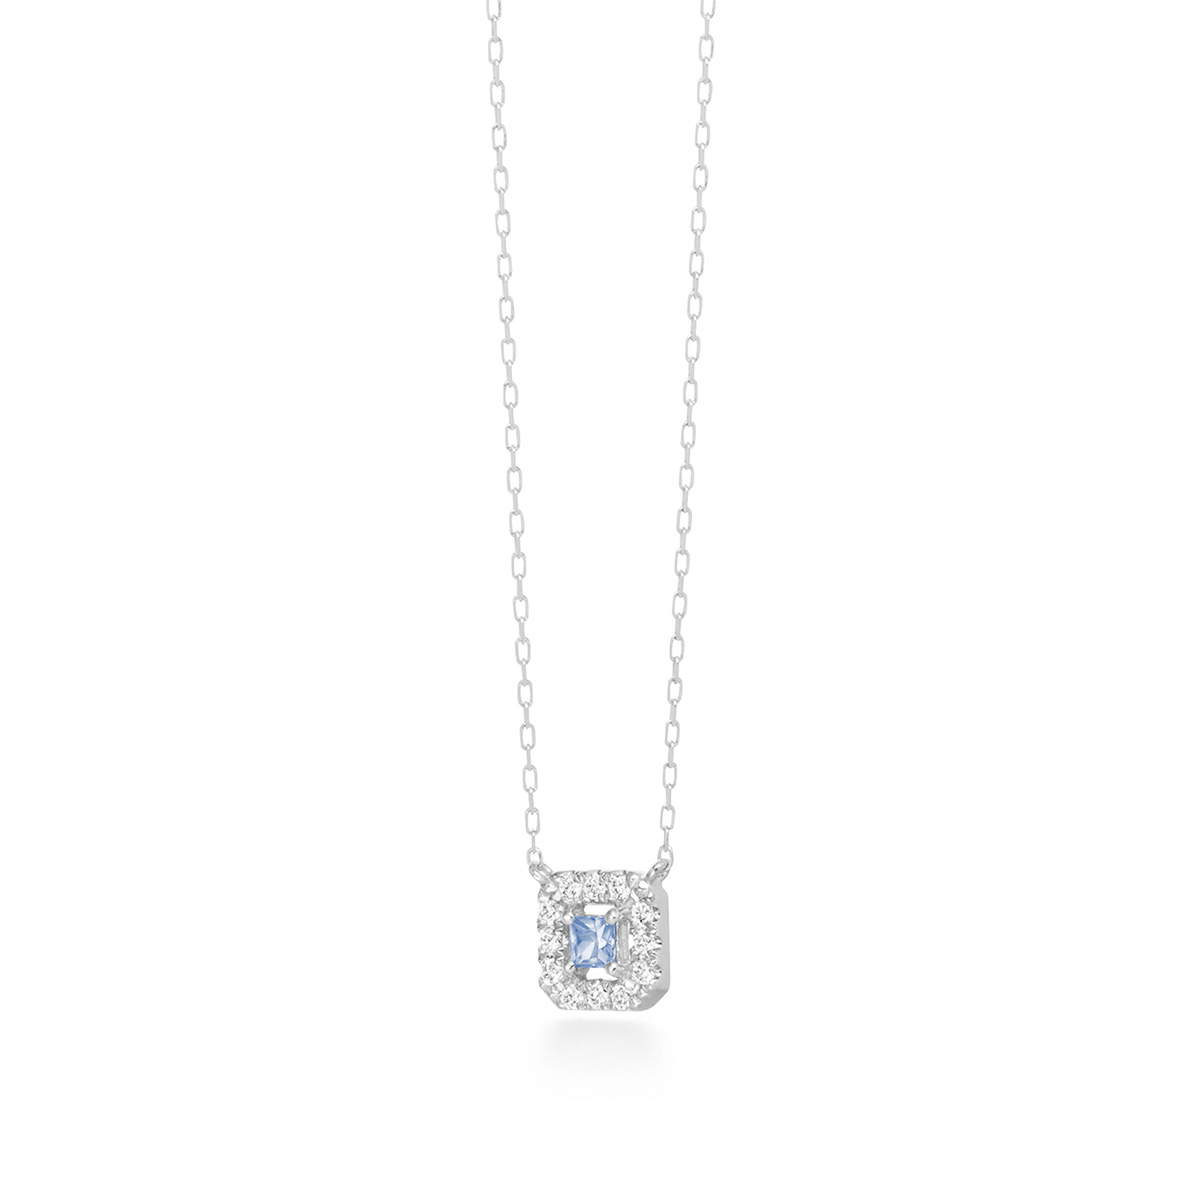 tina coffret necklace (blue sapphire)